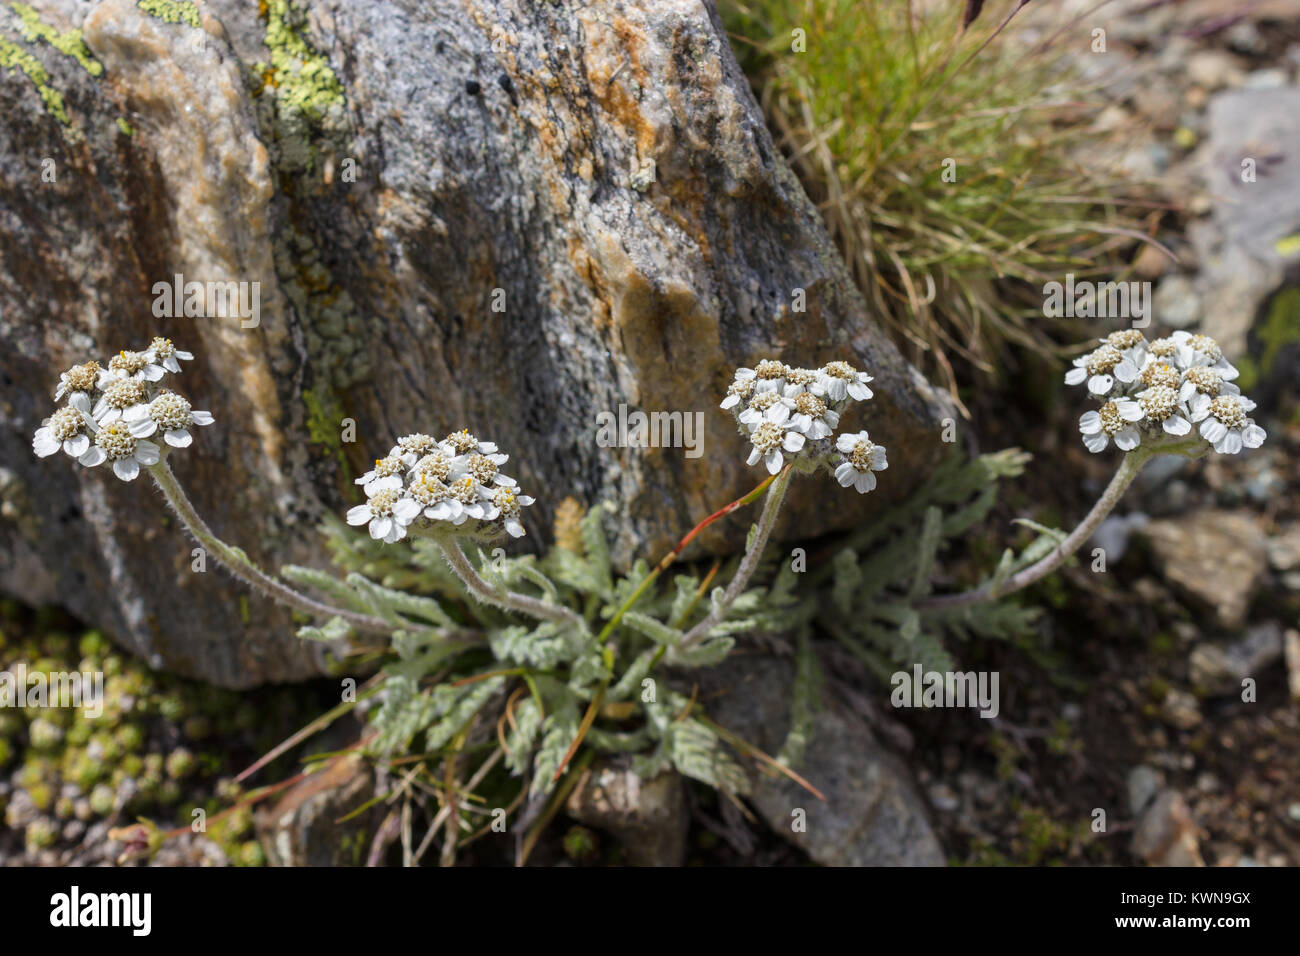 Alpine flower Achillea nana (Dwarf alpine yarrow) at 2850 meters of altitude. Stock Photo